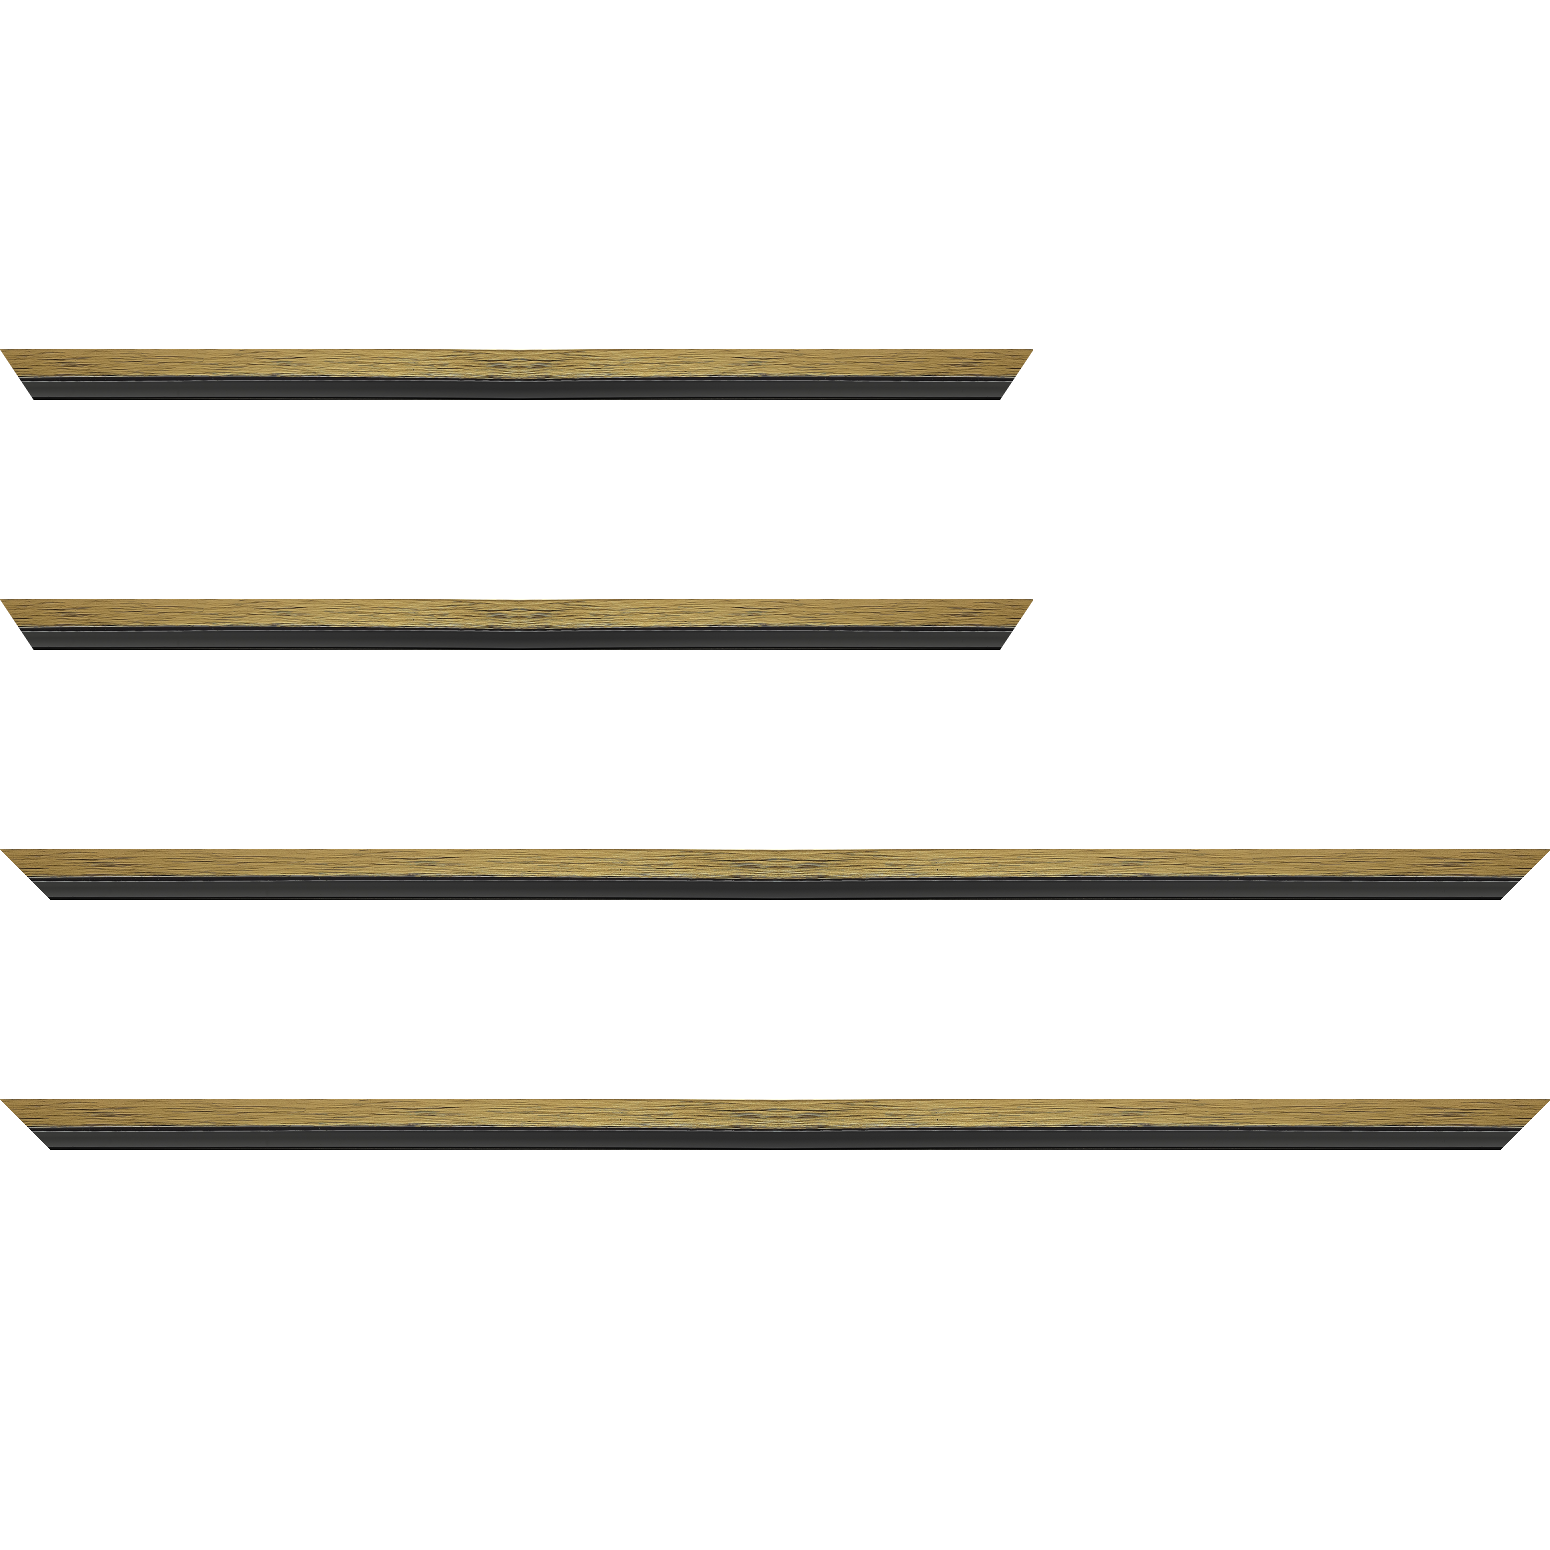 Baguette bois profil plat largeur 1.6cm couleur or contemporain filet noir en retrait de la face du cadre de 6mm assurant un effet très original - 50x60